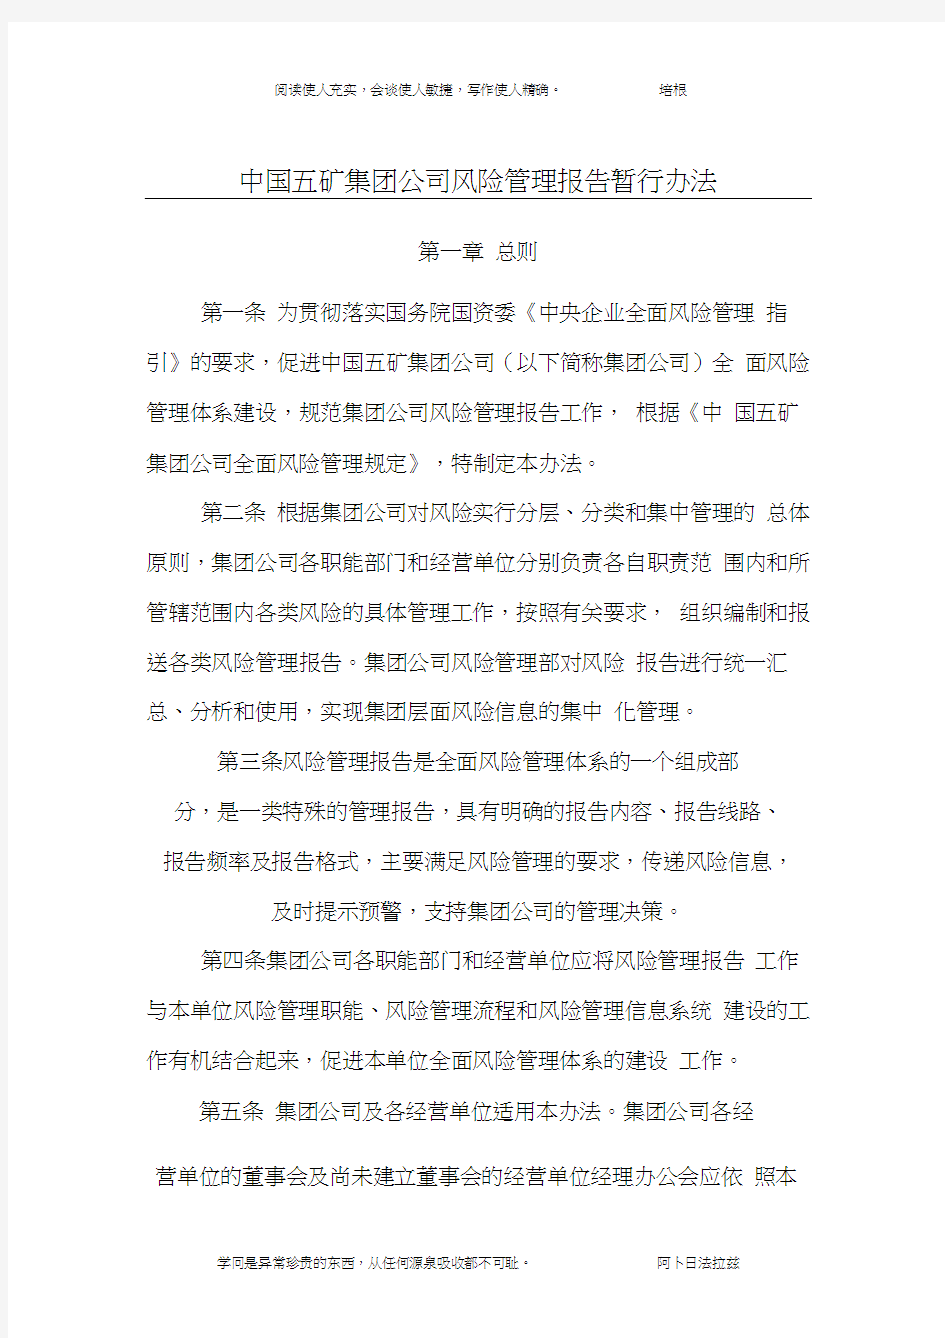 中国五矿集团公司风险管理报告暂行办法(最终稿)